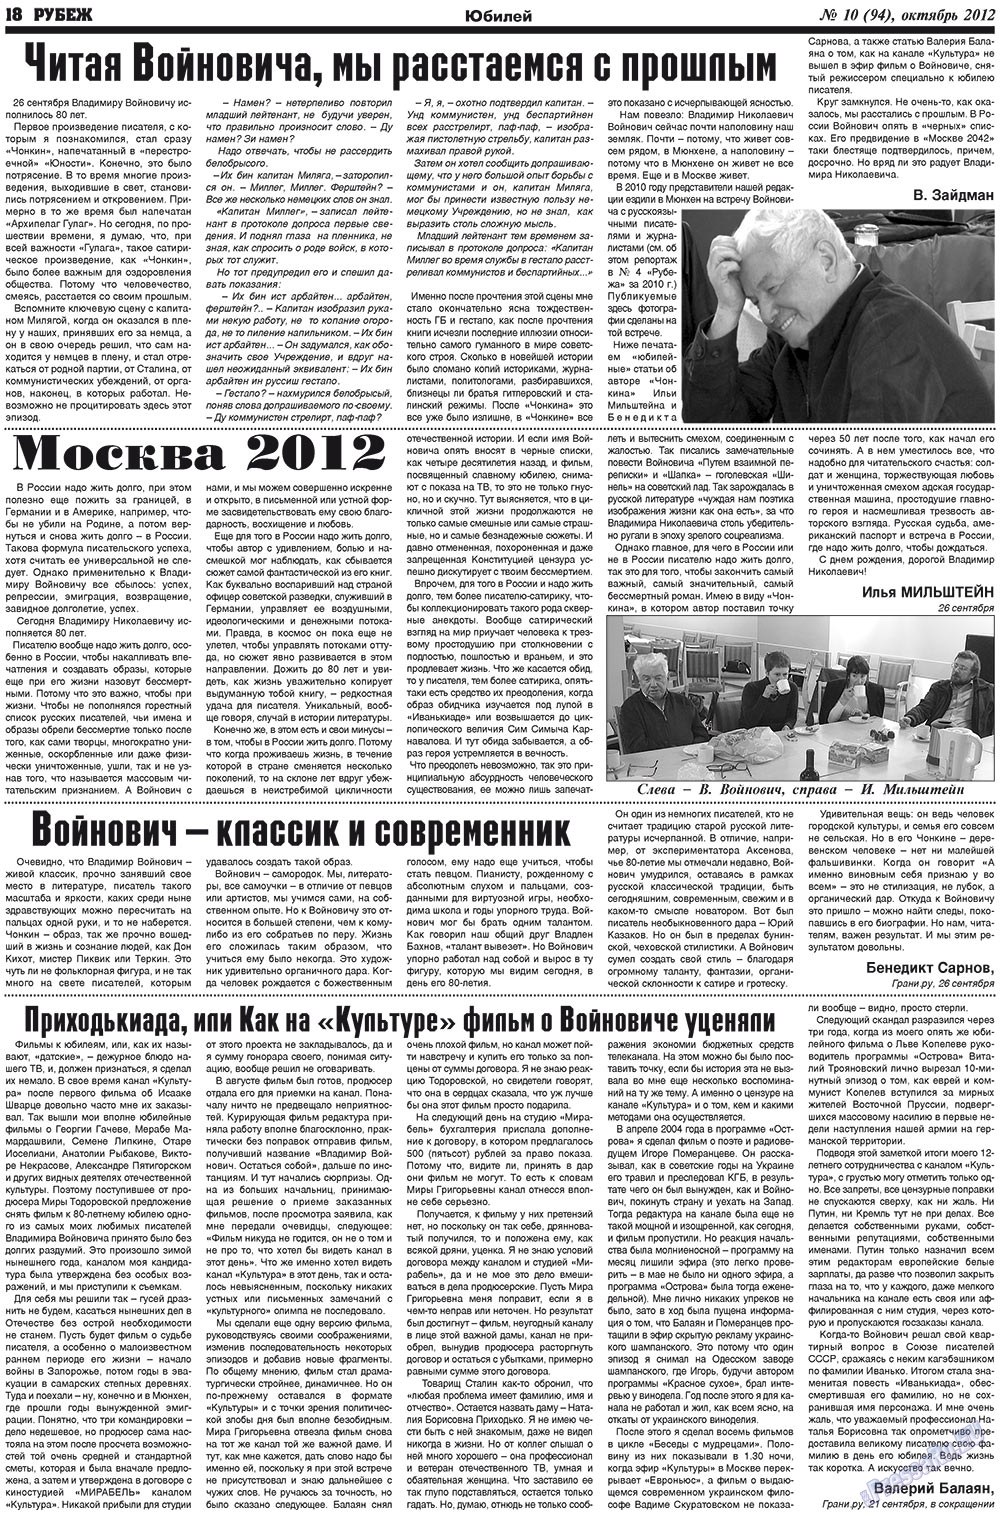 Рубеж (газета). 2012 год, номер 10, стр. 18